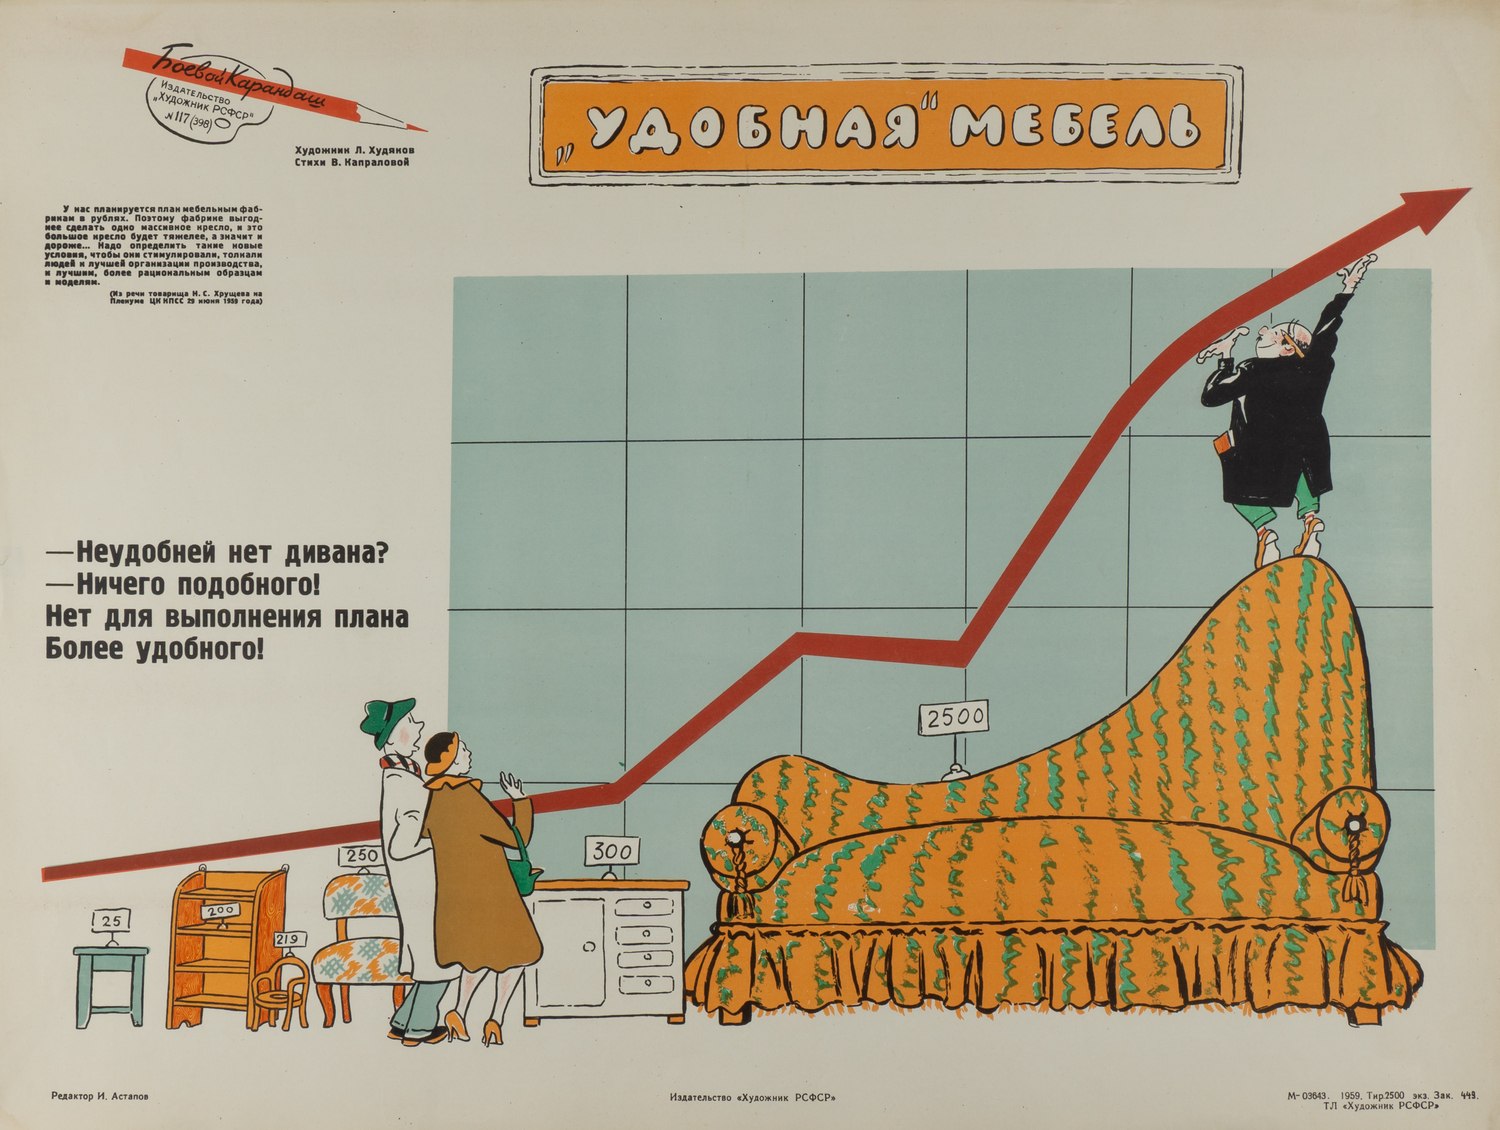 («Боевой карандаш») Худяков Л.В. Плакат «Удобная мебель» (Л., 1959).